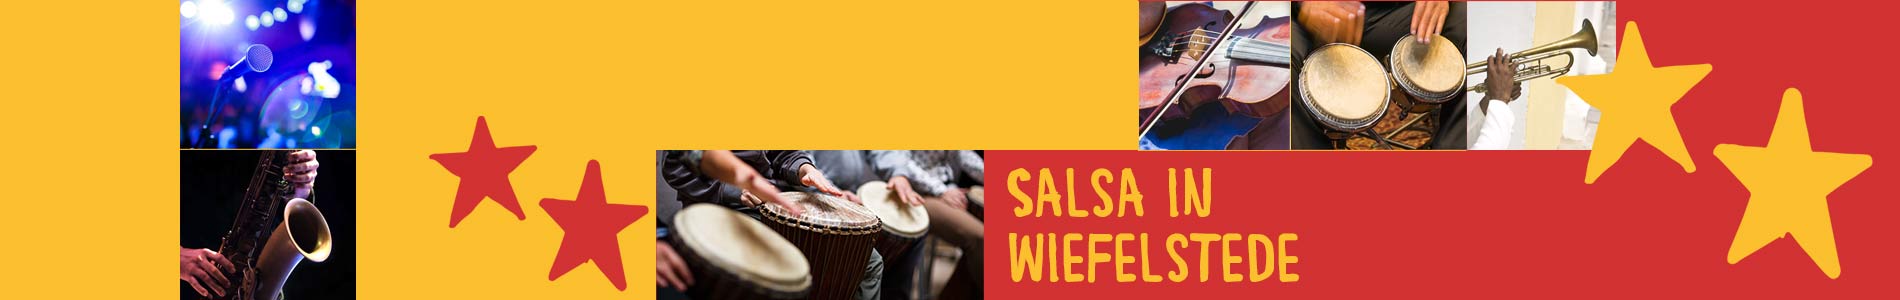 Salsa in Wiefelstede – Salsa lernen und tanzen, Tanzkurse, Partys, Veranstaltungen